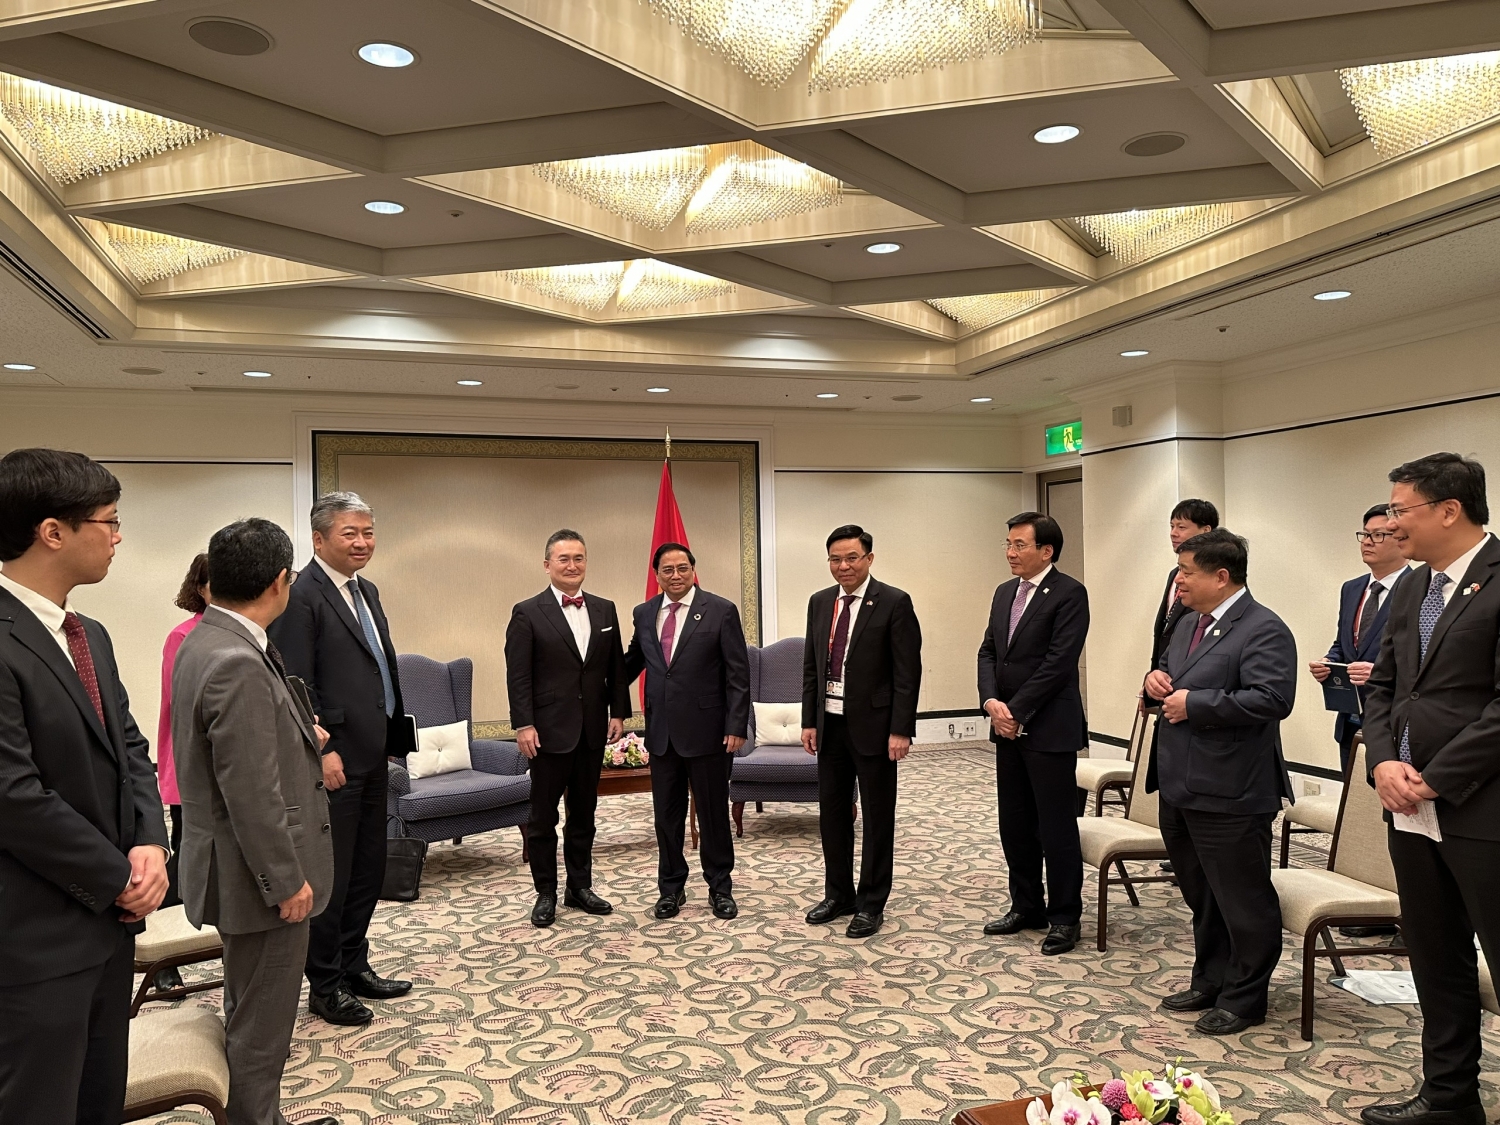 Thủ tướng nghe lãnh đạo MOECO và Tổng Giám đốc Petrovietnam Lê Mạnh Hùng báo cáo về tình hình triển khai dự án Lô B